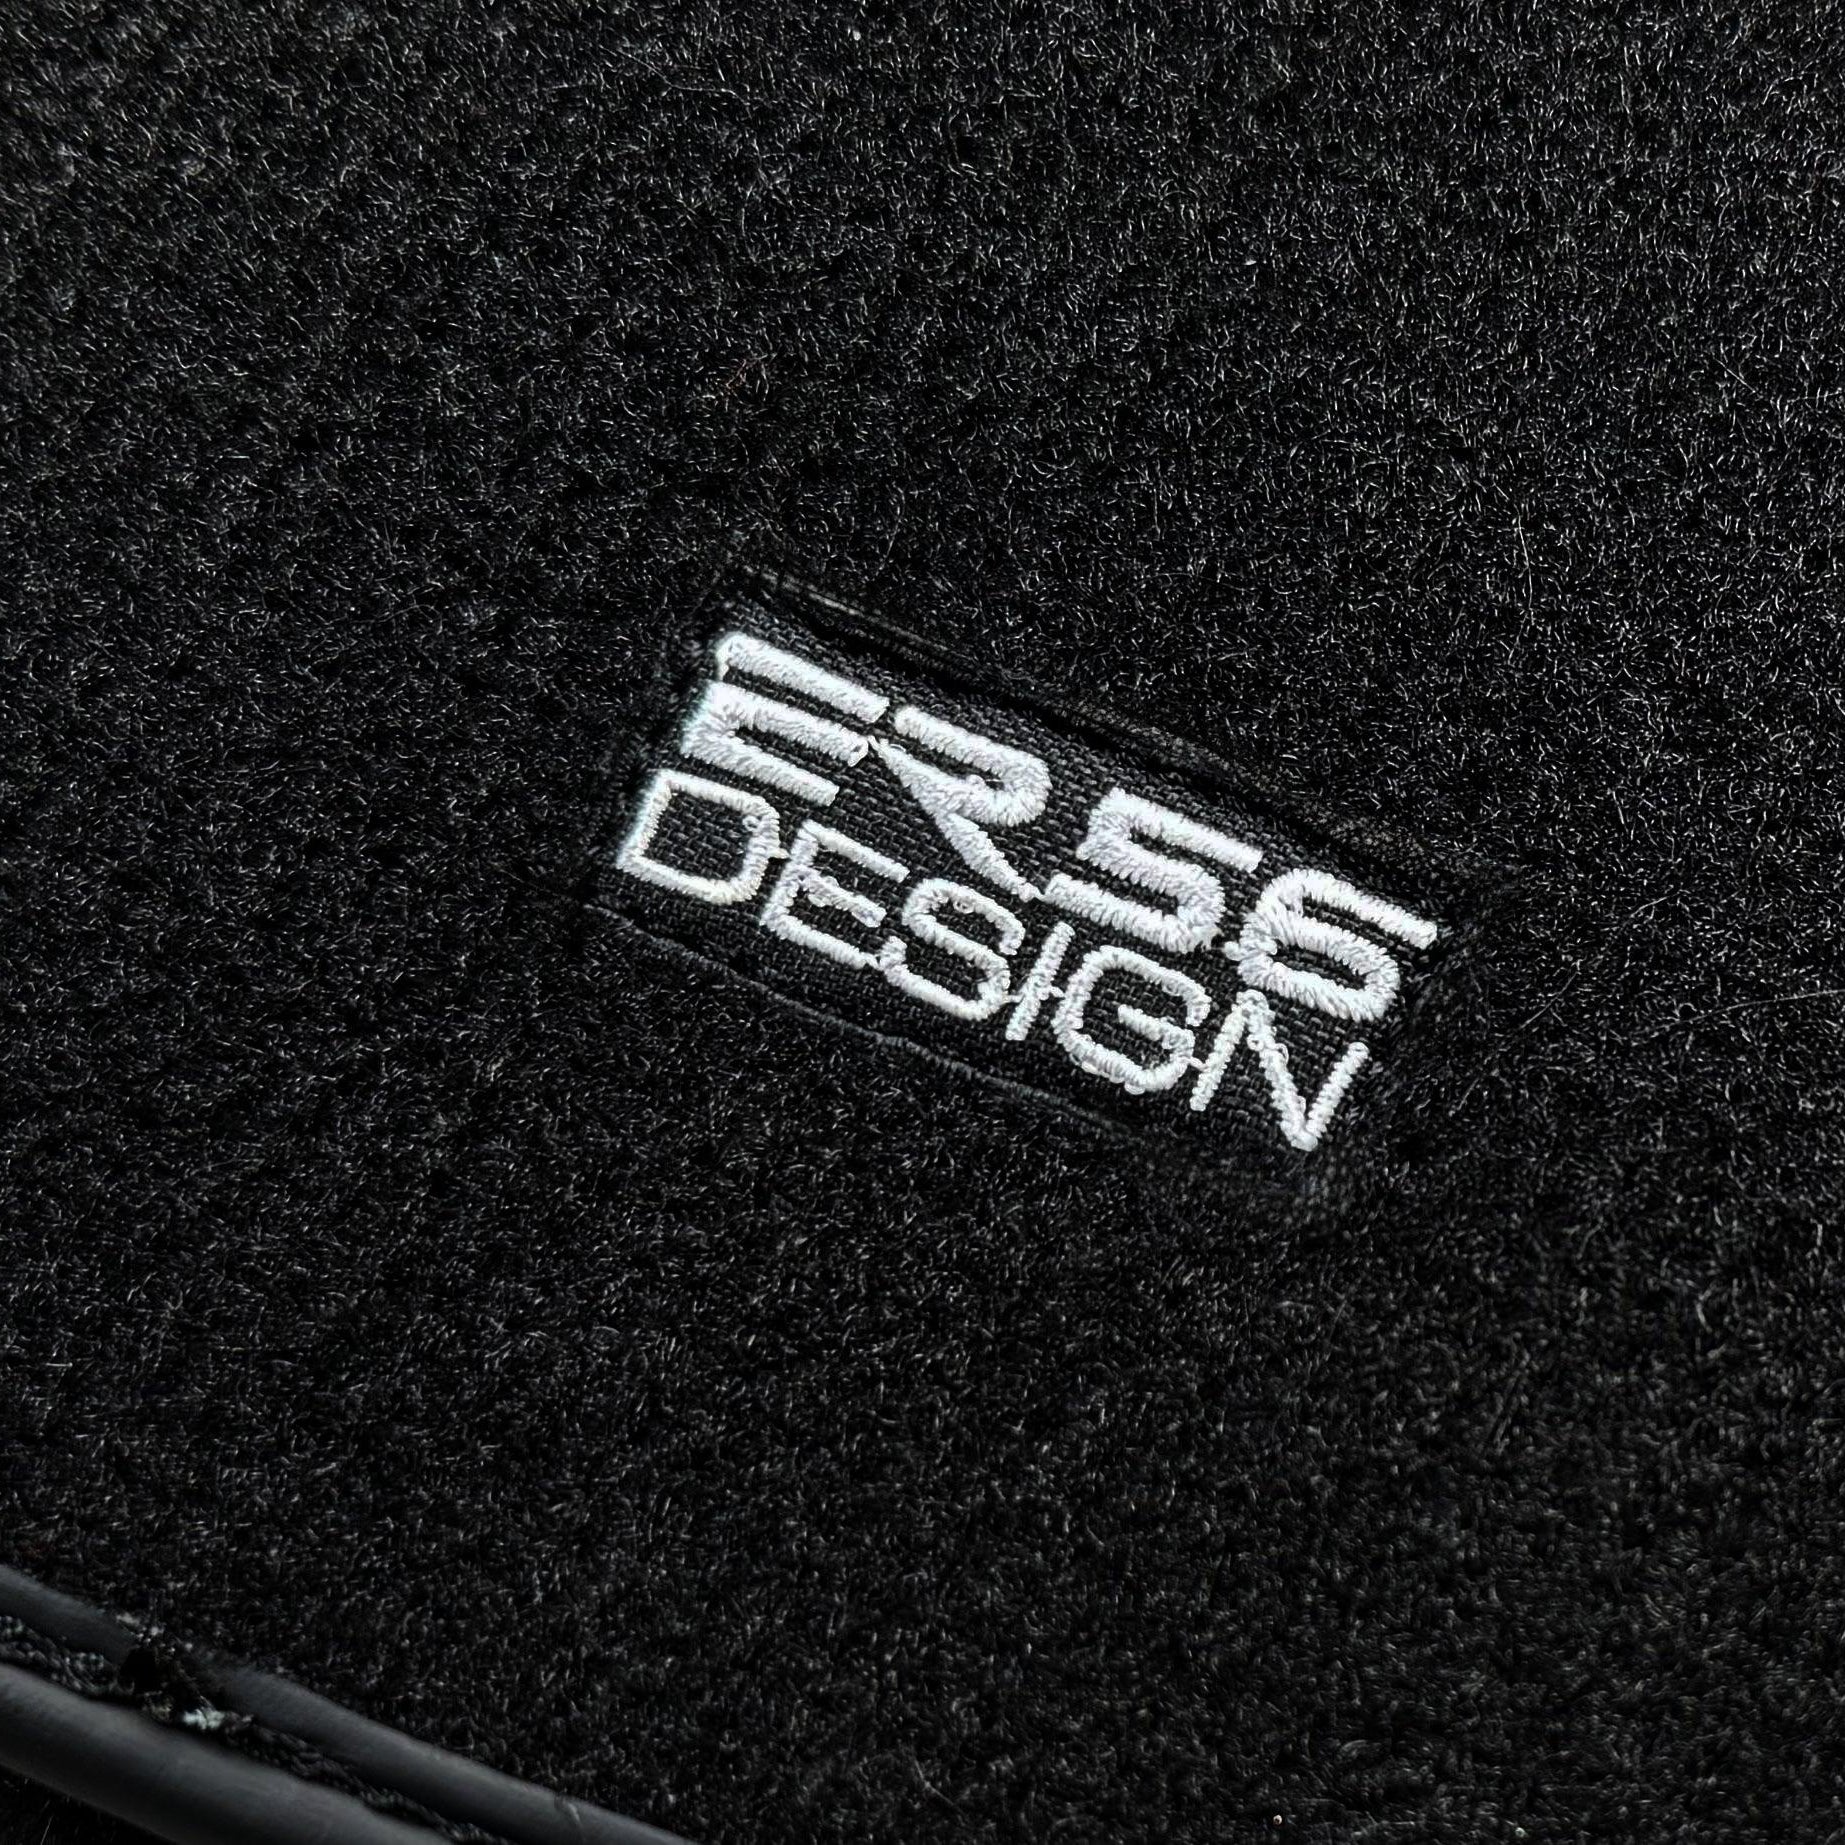 Black Sheepskin Floor Floor Mats For BMW 3 Series E92 ER56 Design